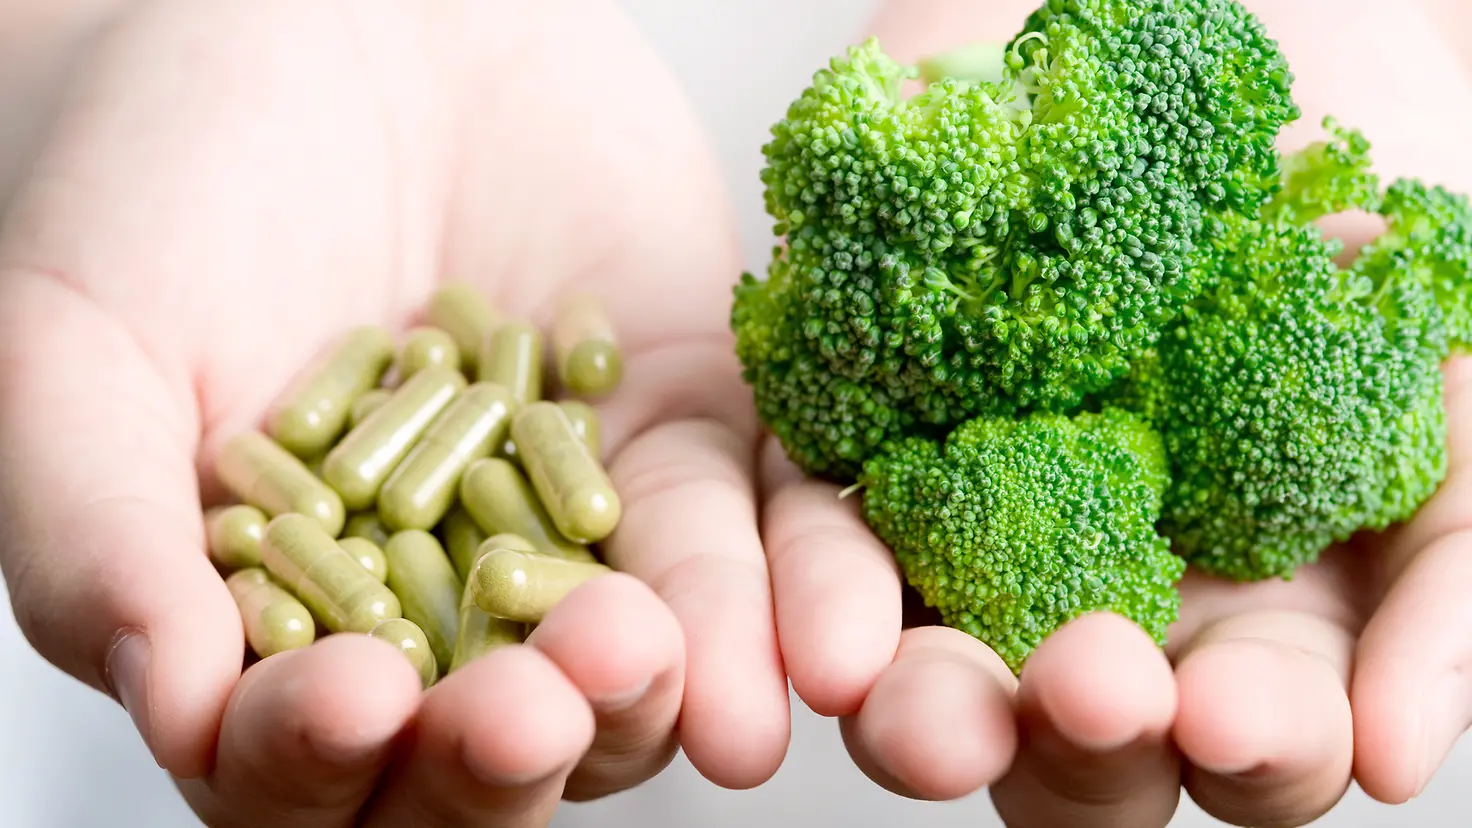 Brokkoli und grüne Kapseln liegen in einer Hand